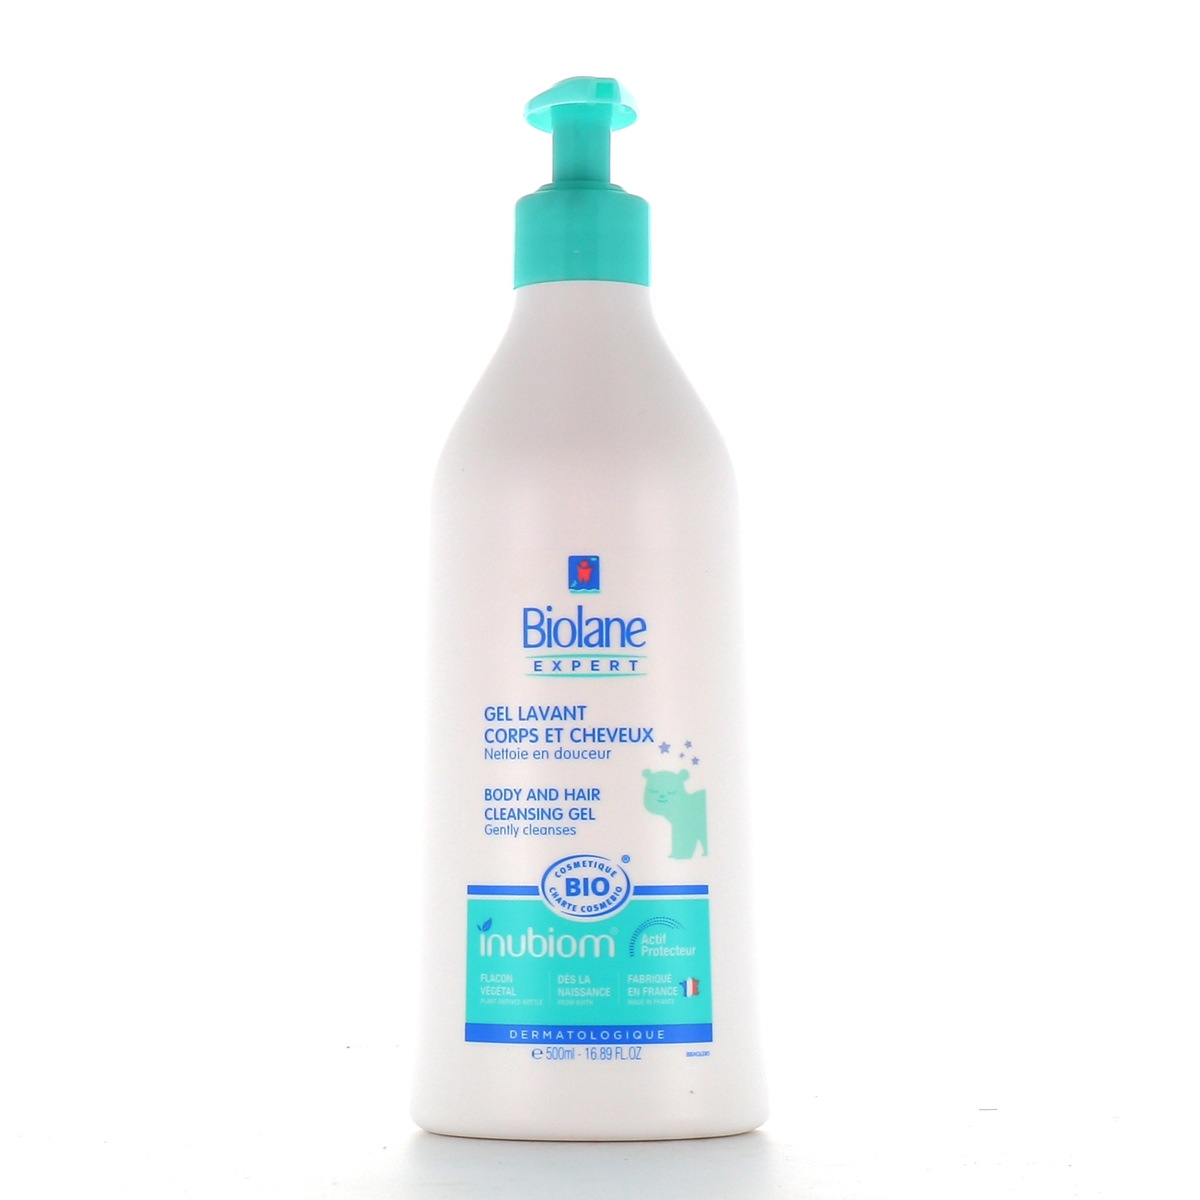 UniversCosmetix - Parapharmacie - #Biolane 🧡Lait nettoyant doux🧡 Un  nettoyant pour le visage, le corps et le siège de votre bébé pour que sa  peau retrouve douceur et confort 🌿💚🌿 ☘️🌱🌾Fabriqué à